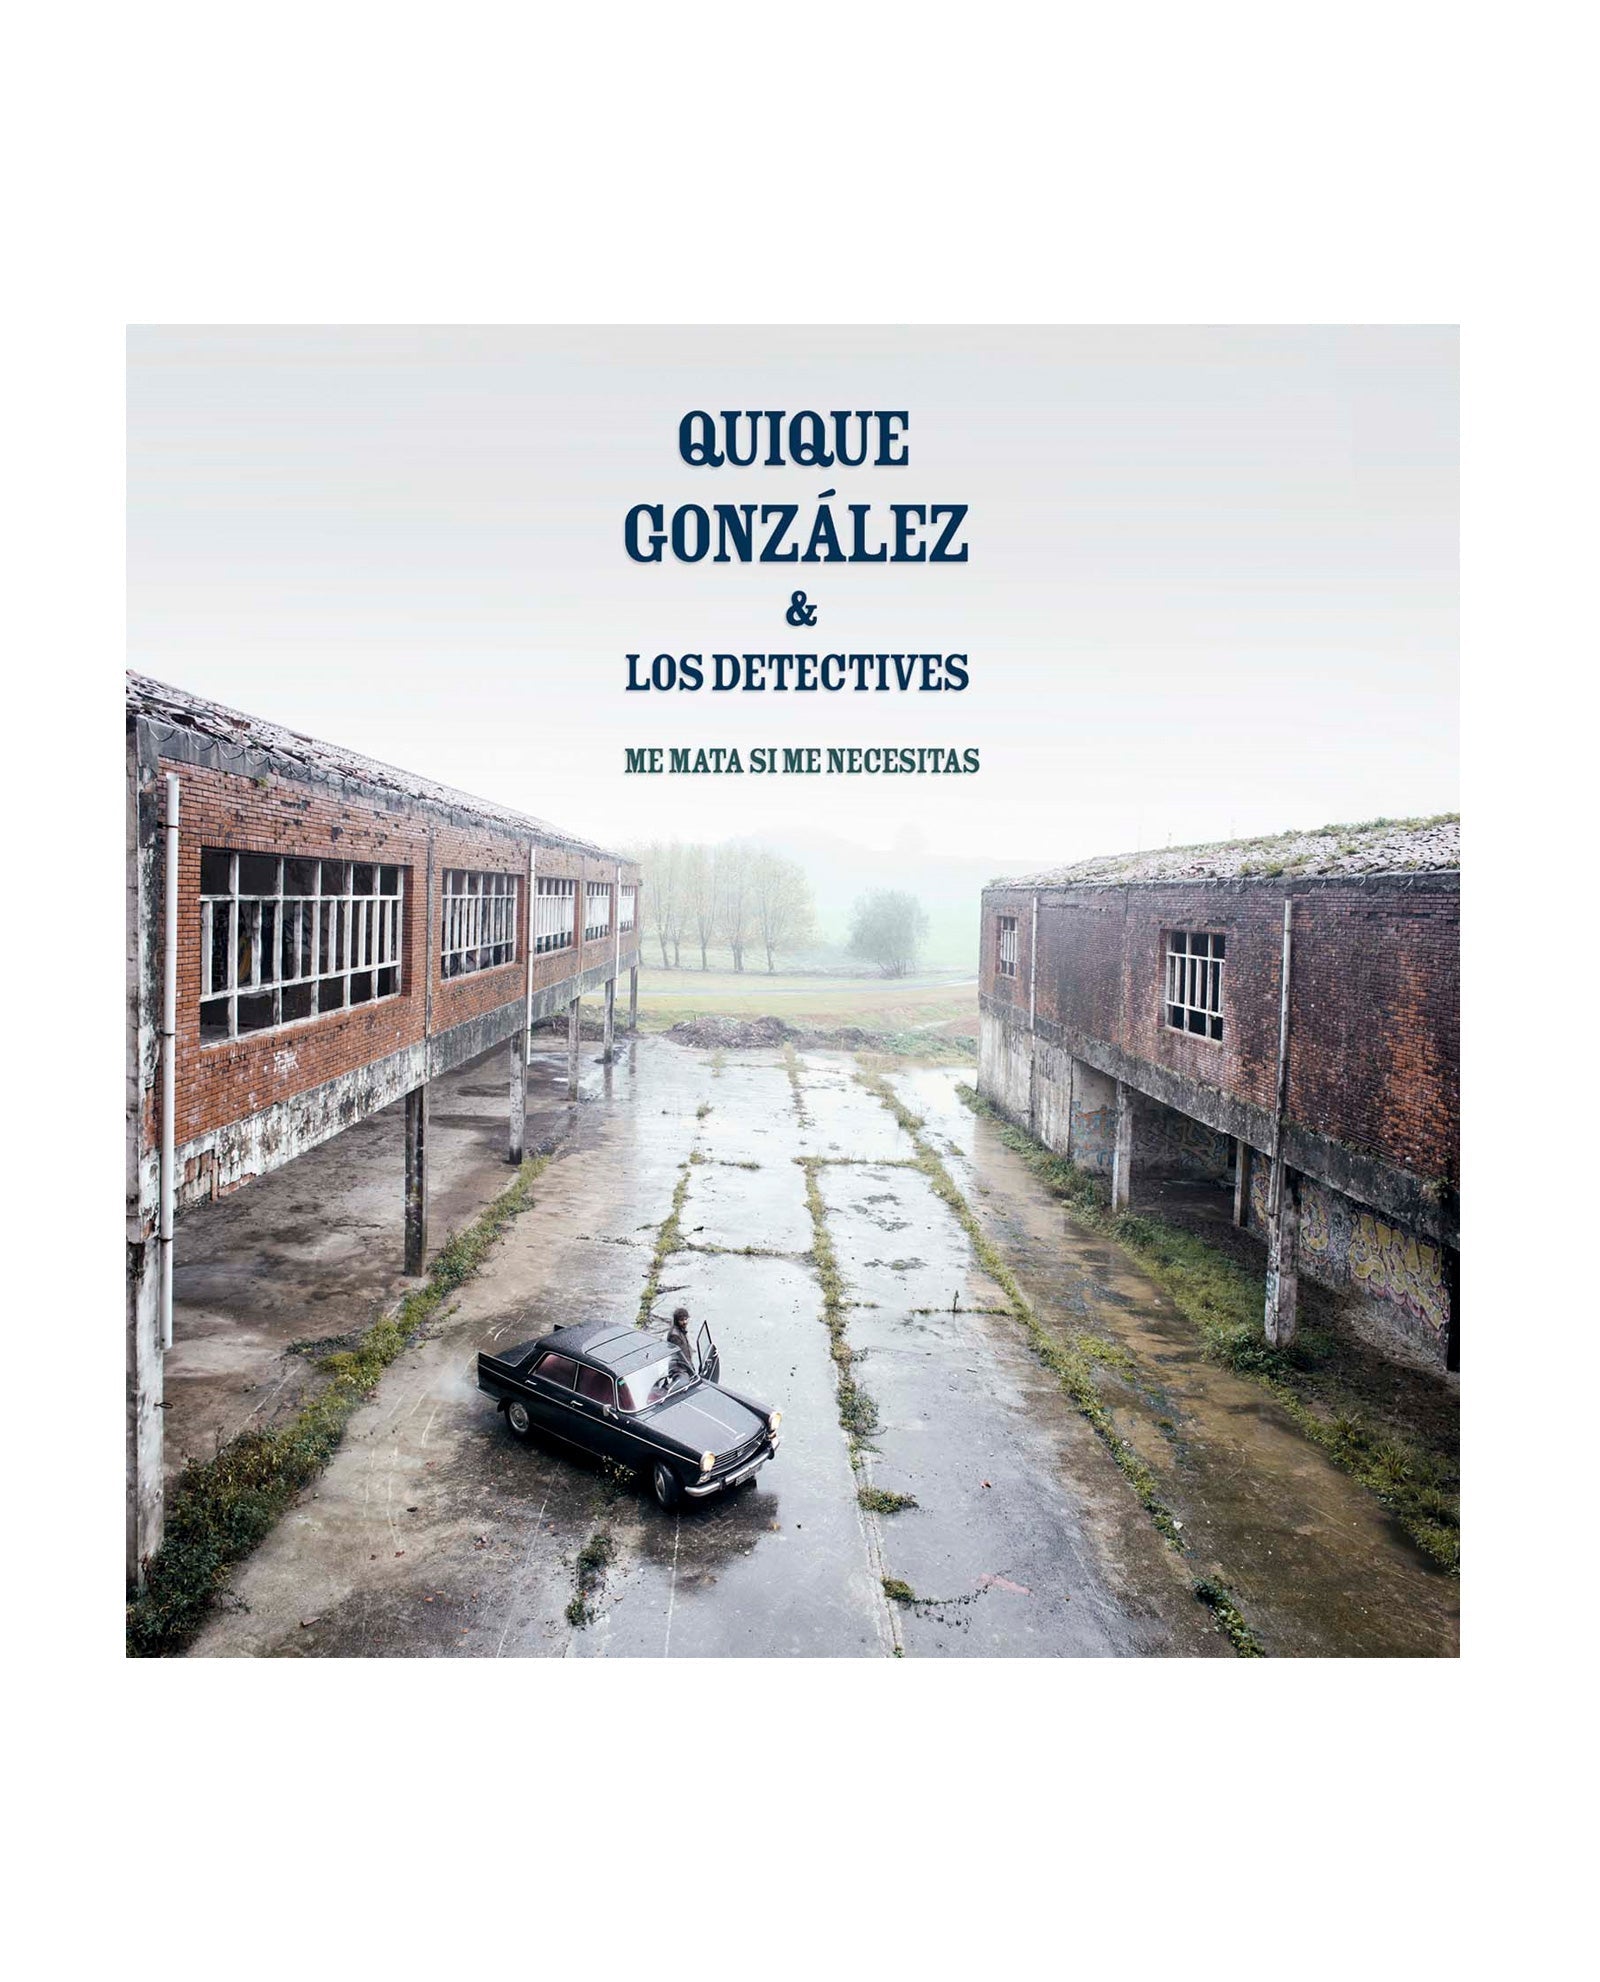 Quique Gonzalez - LP Vinilo "Me mata si me necesitas" - D2fy · Rocktud - Quique González